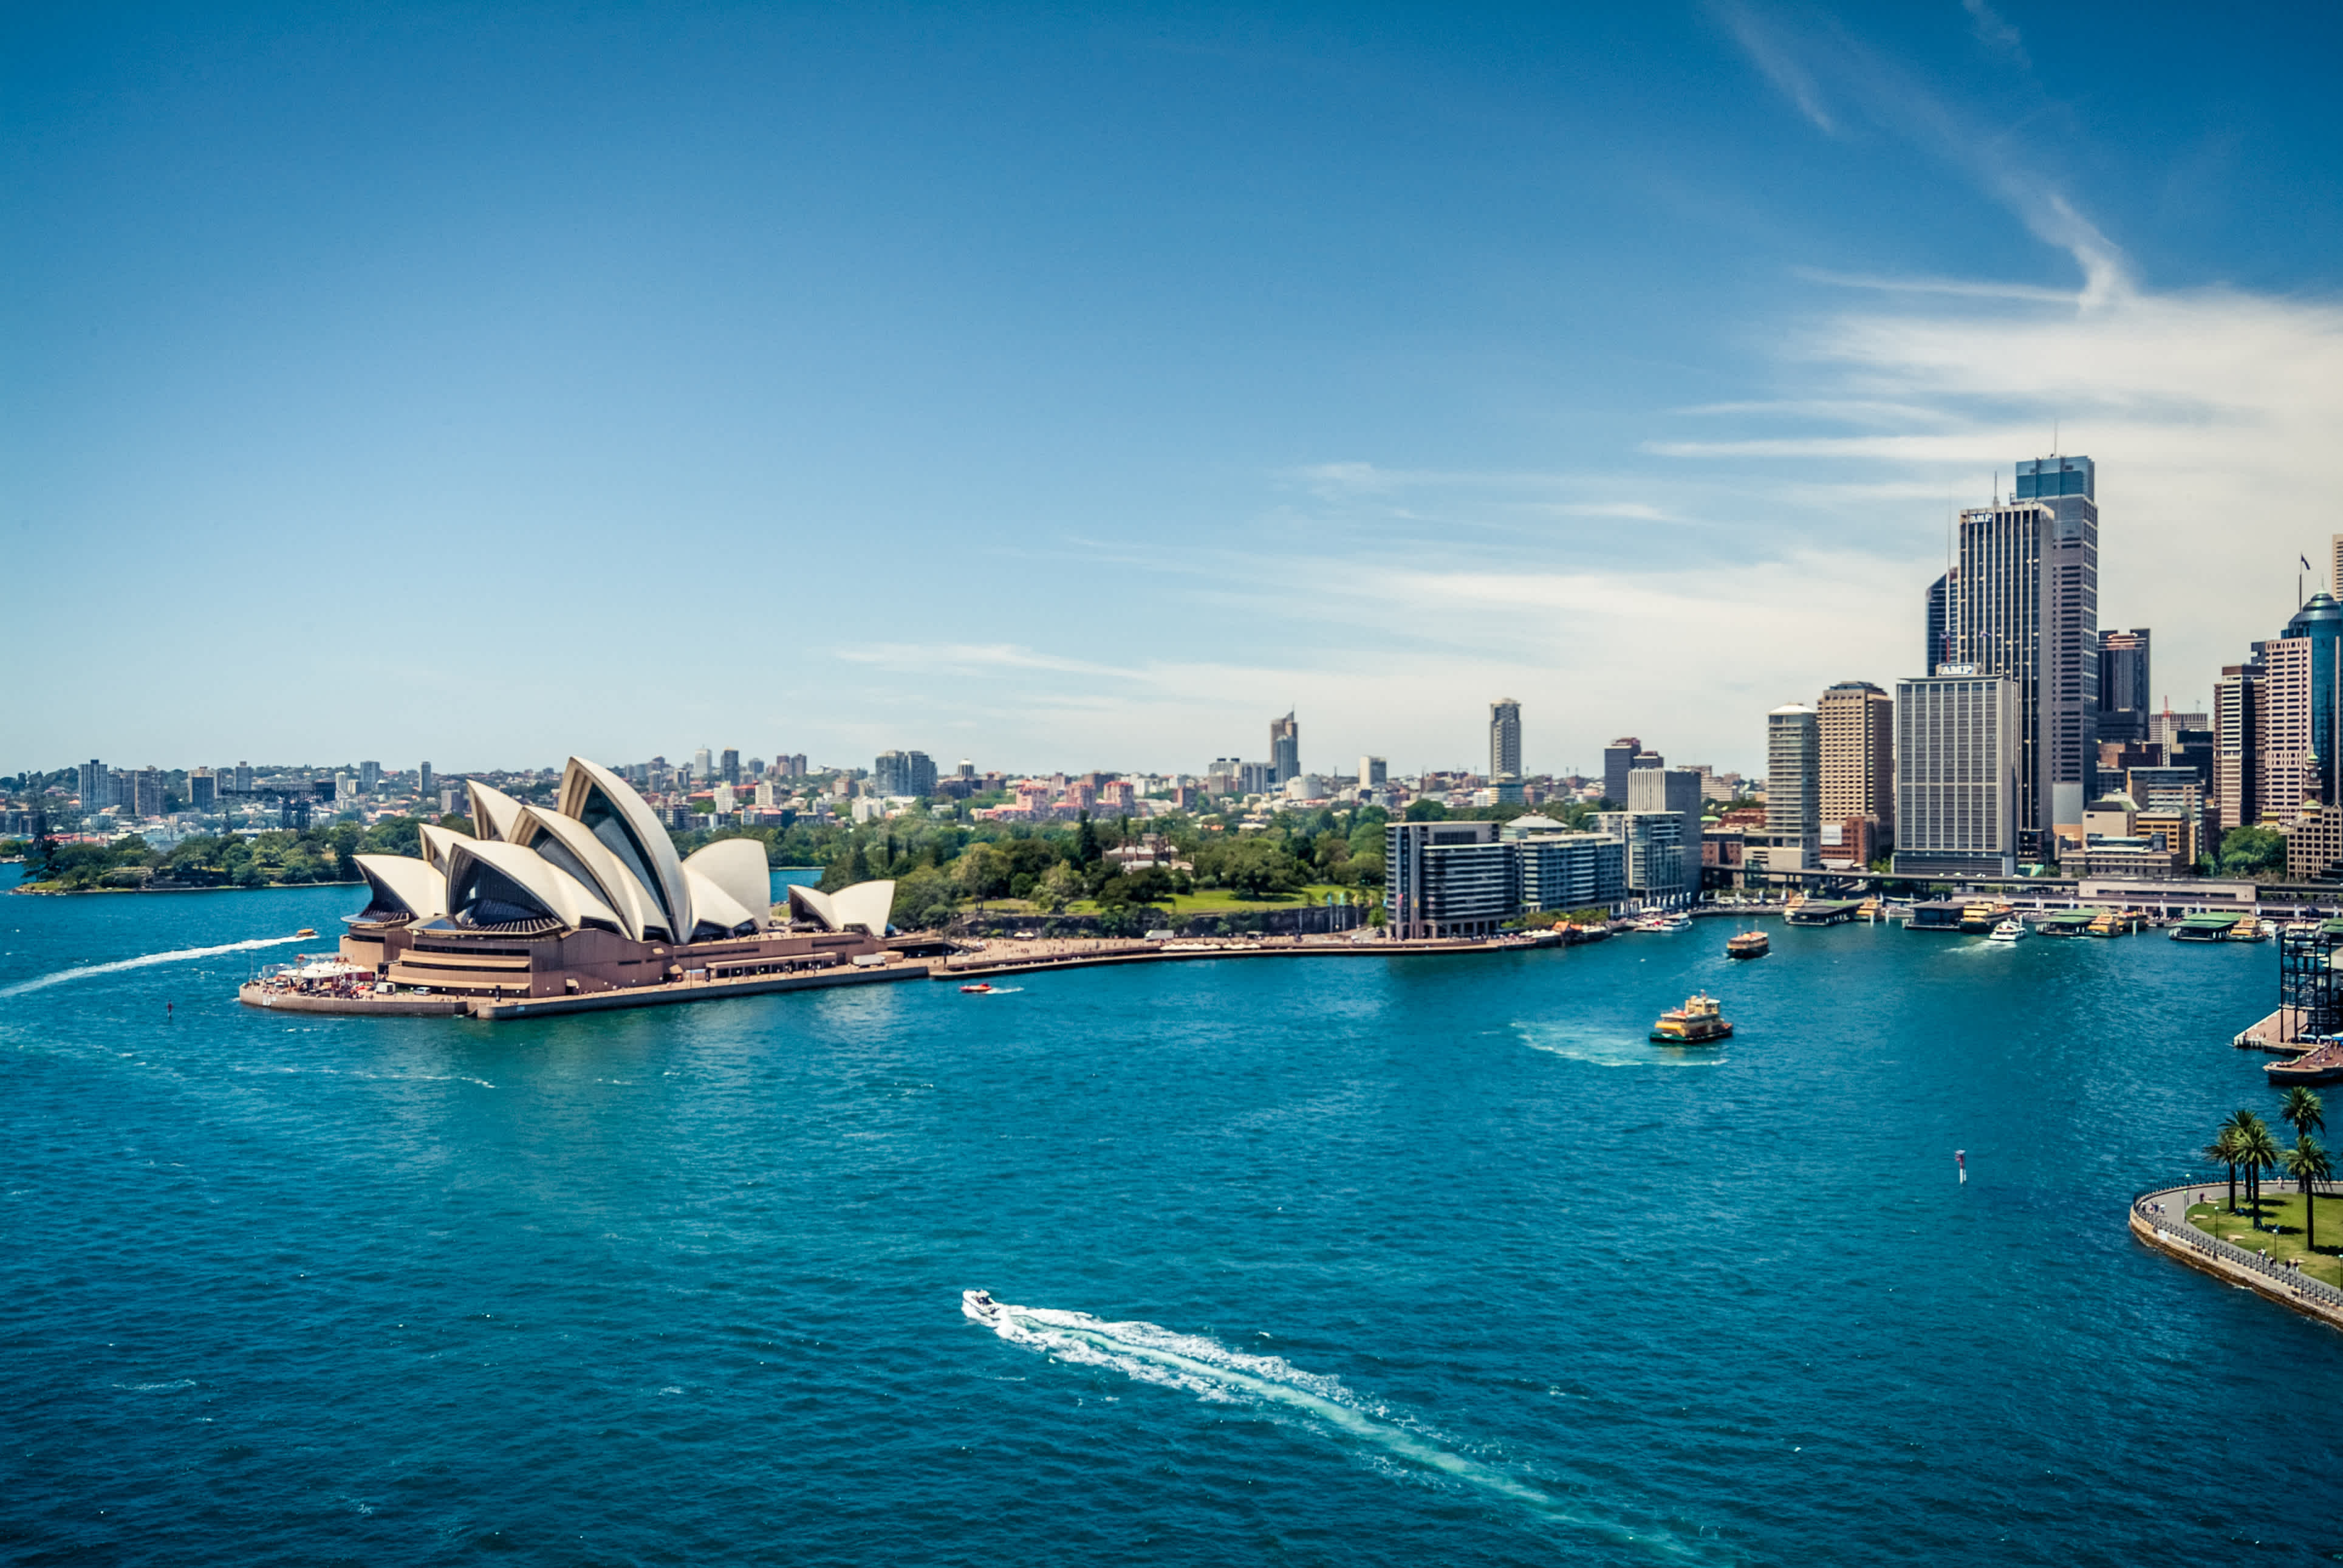 Visitez le port de Sydney et son célèbre Opera House dont l'architecture évoque les voiles d'un bateau pendant votre voyage.